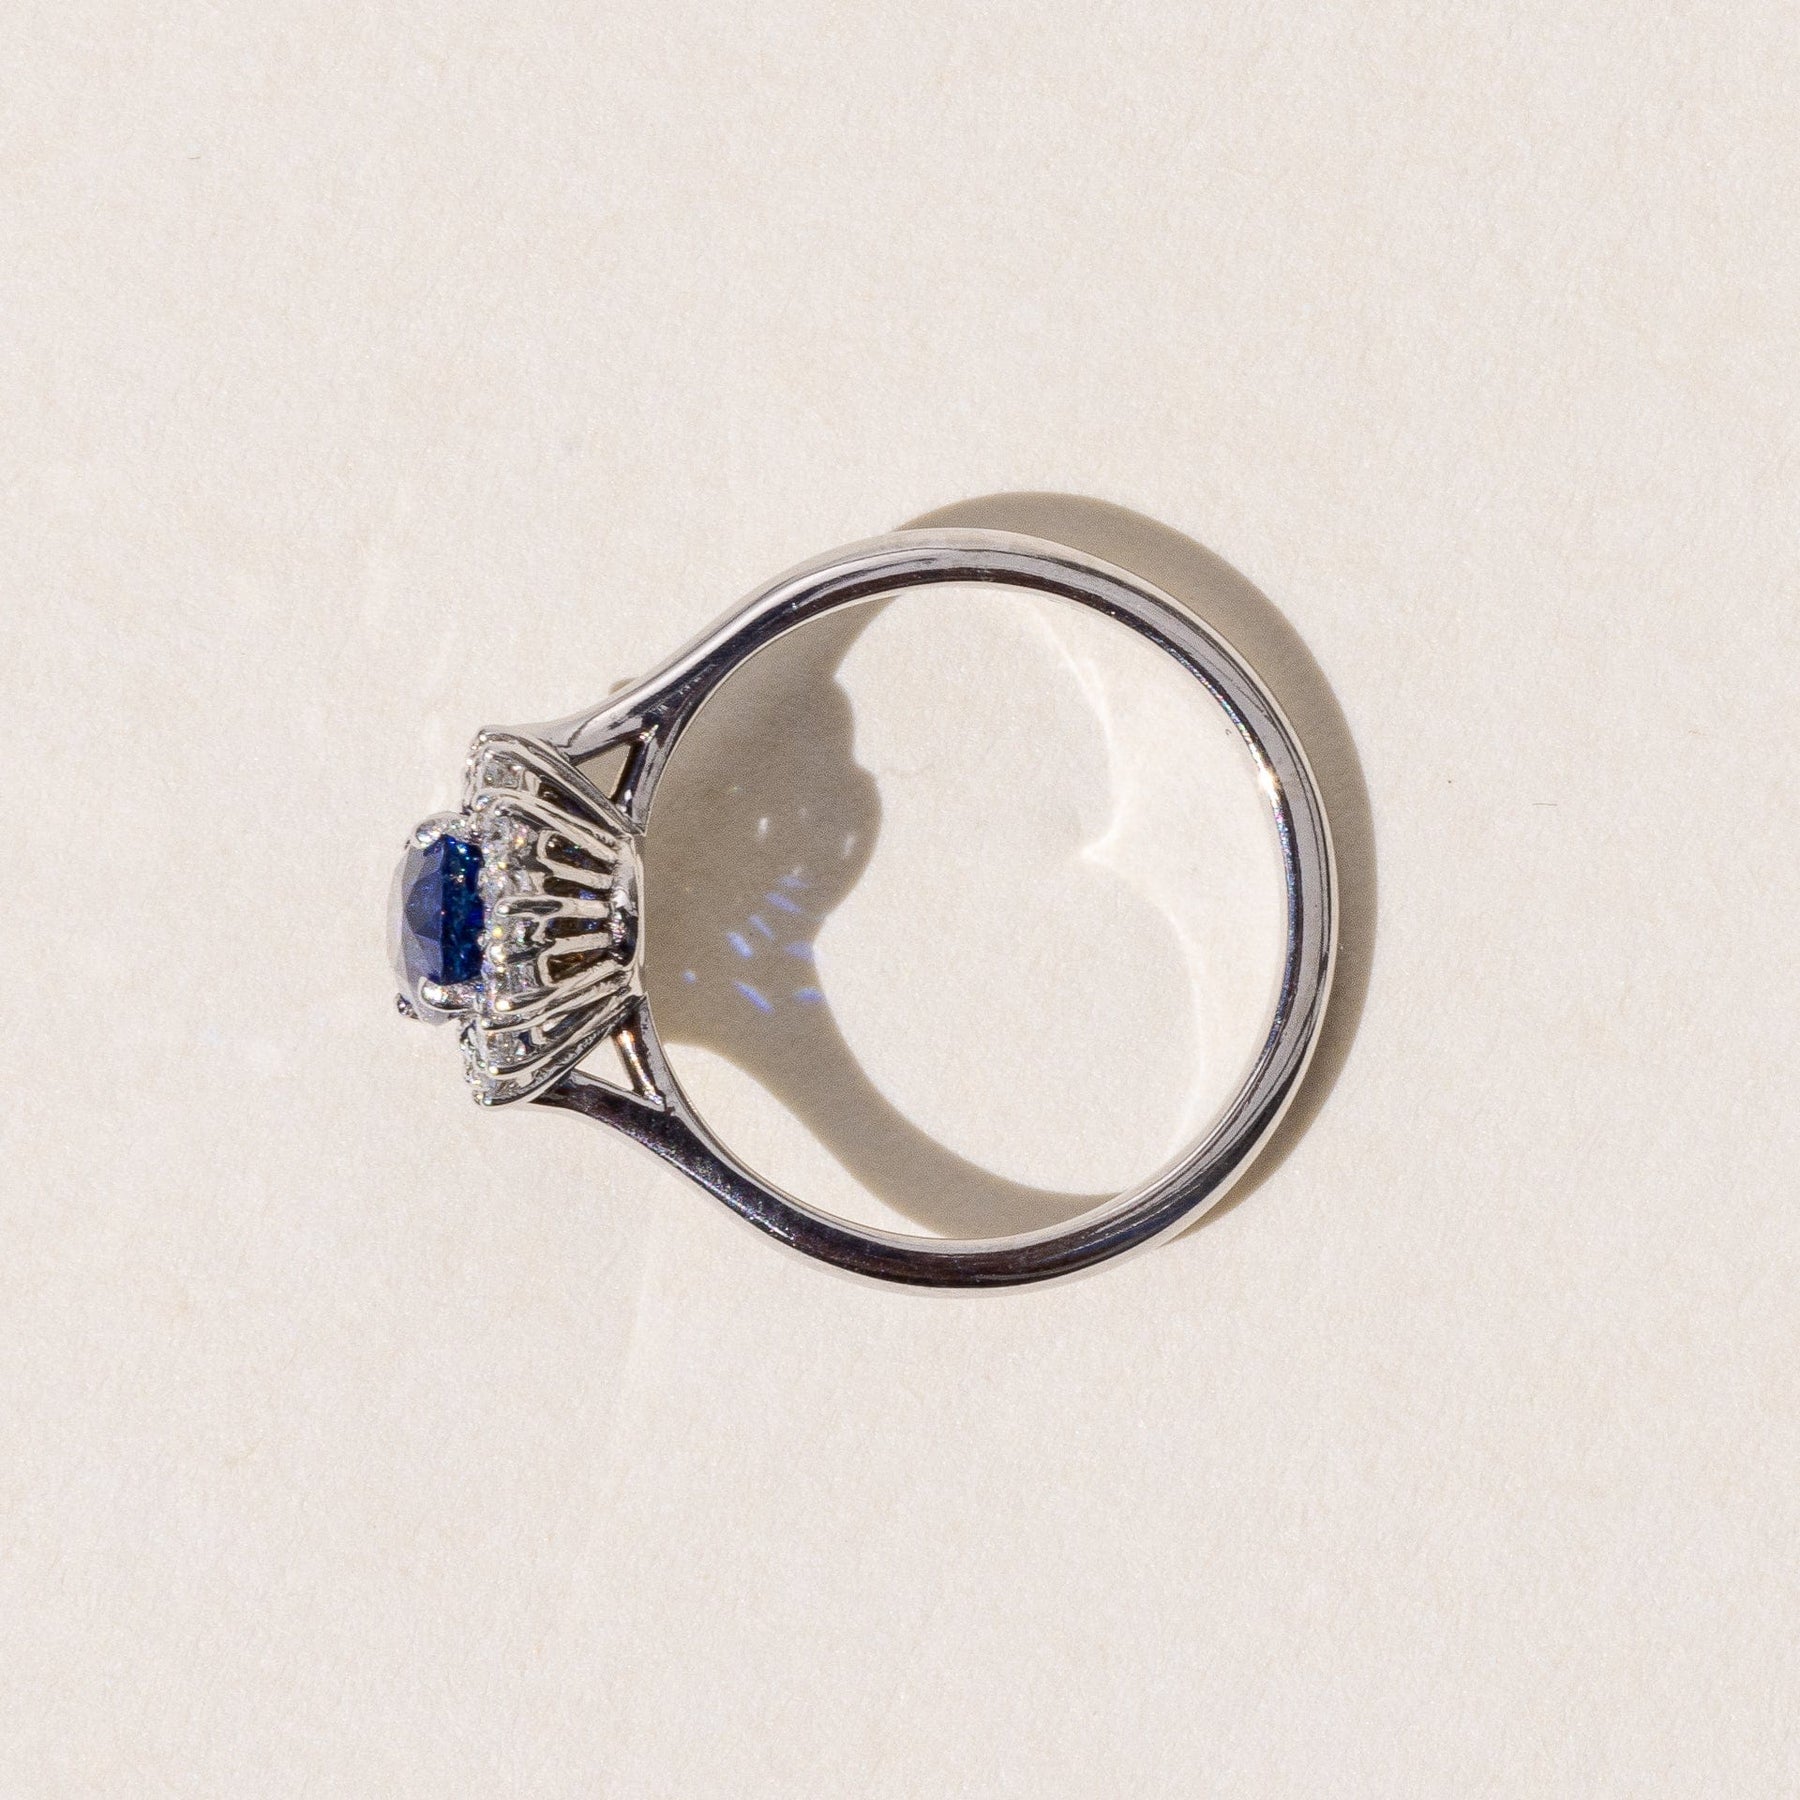 Coloured Gemstone Engagement Ring in Platinum